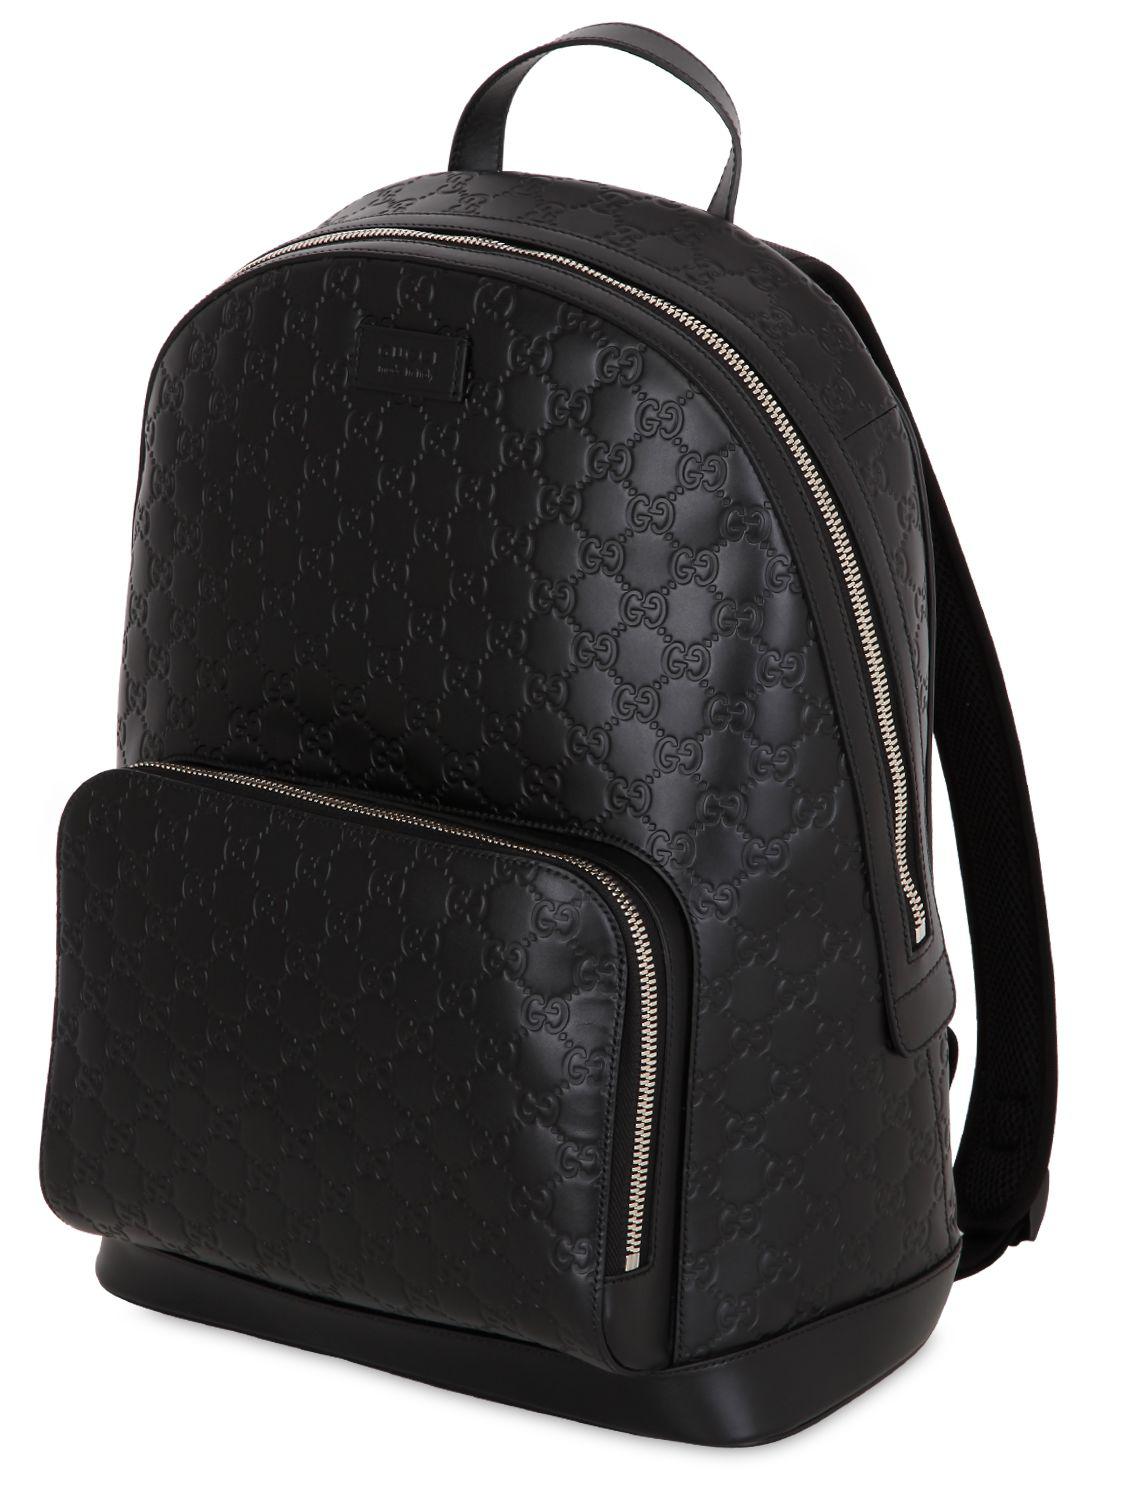 gucci backpack black